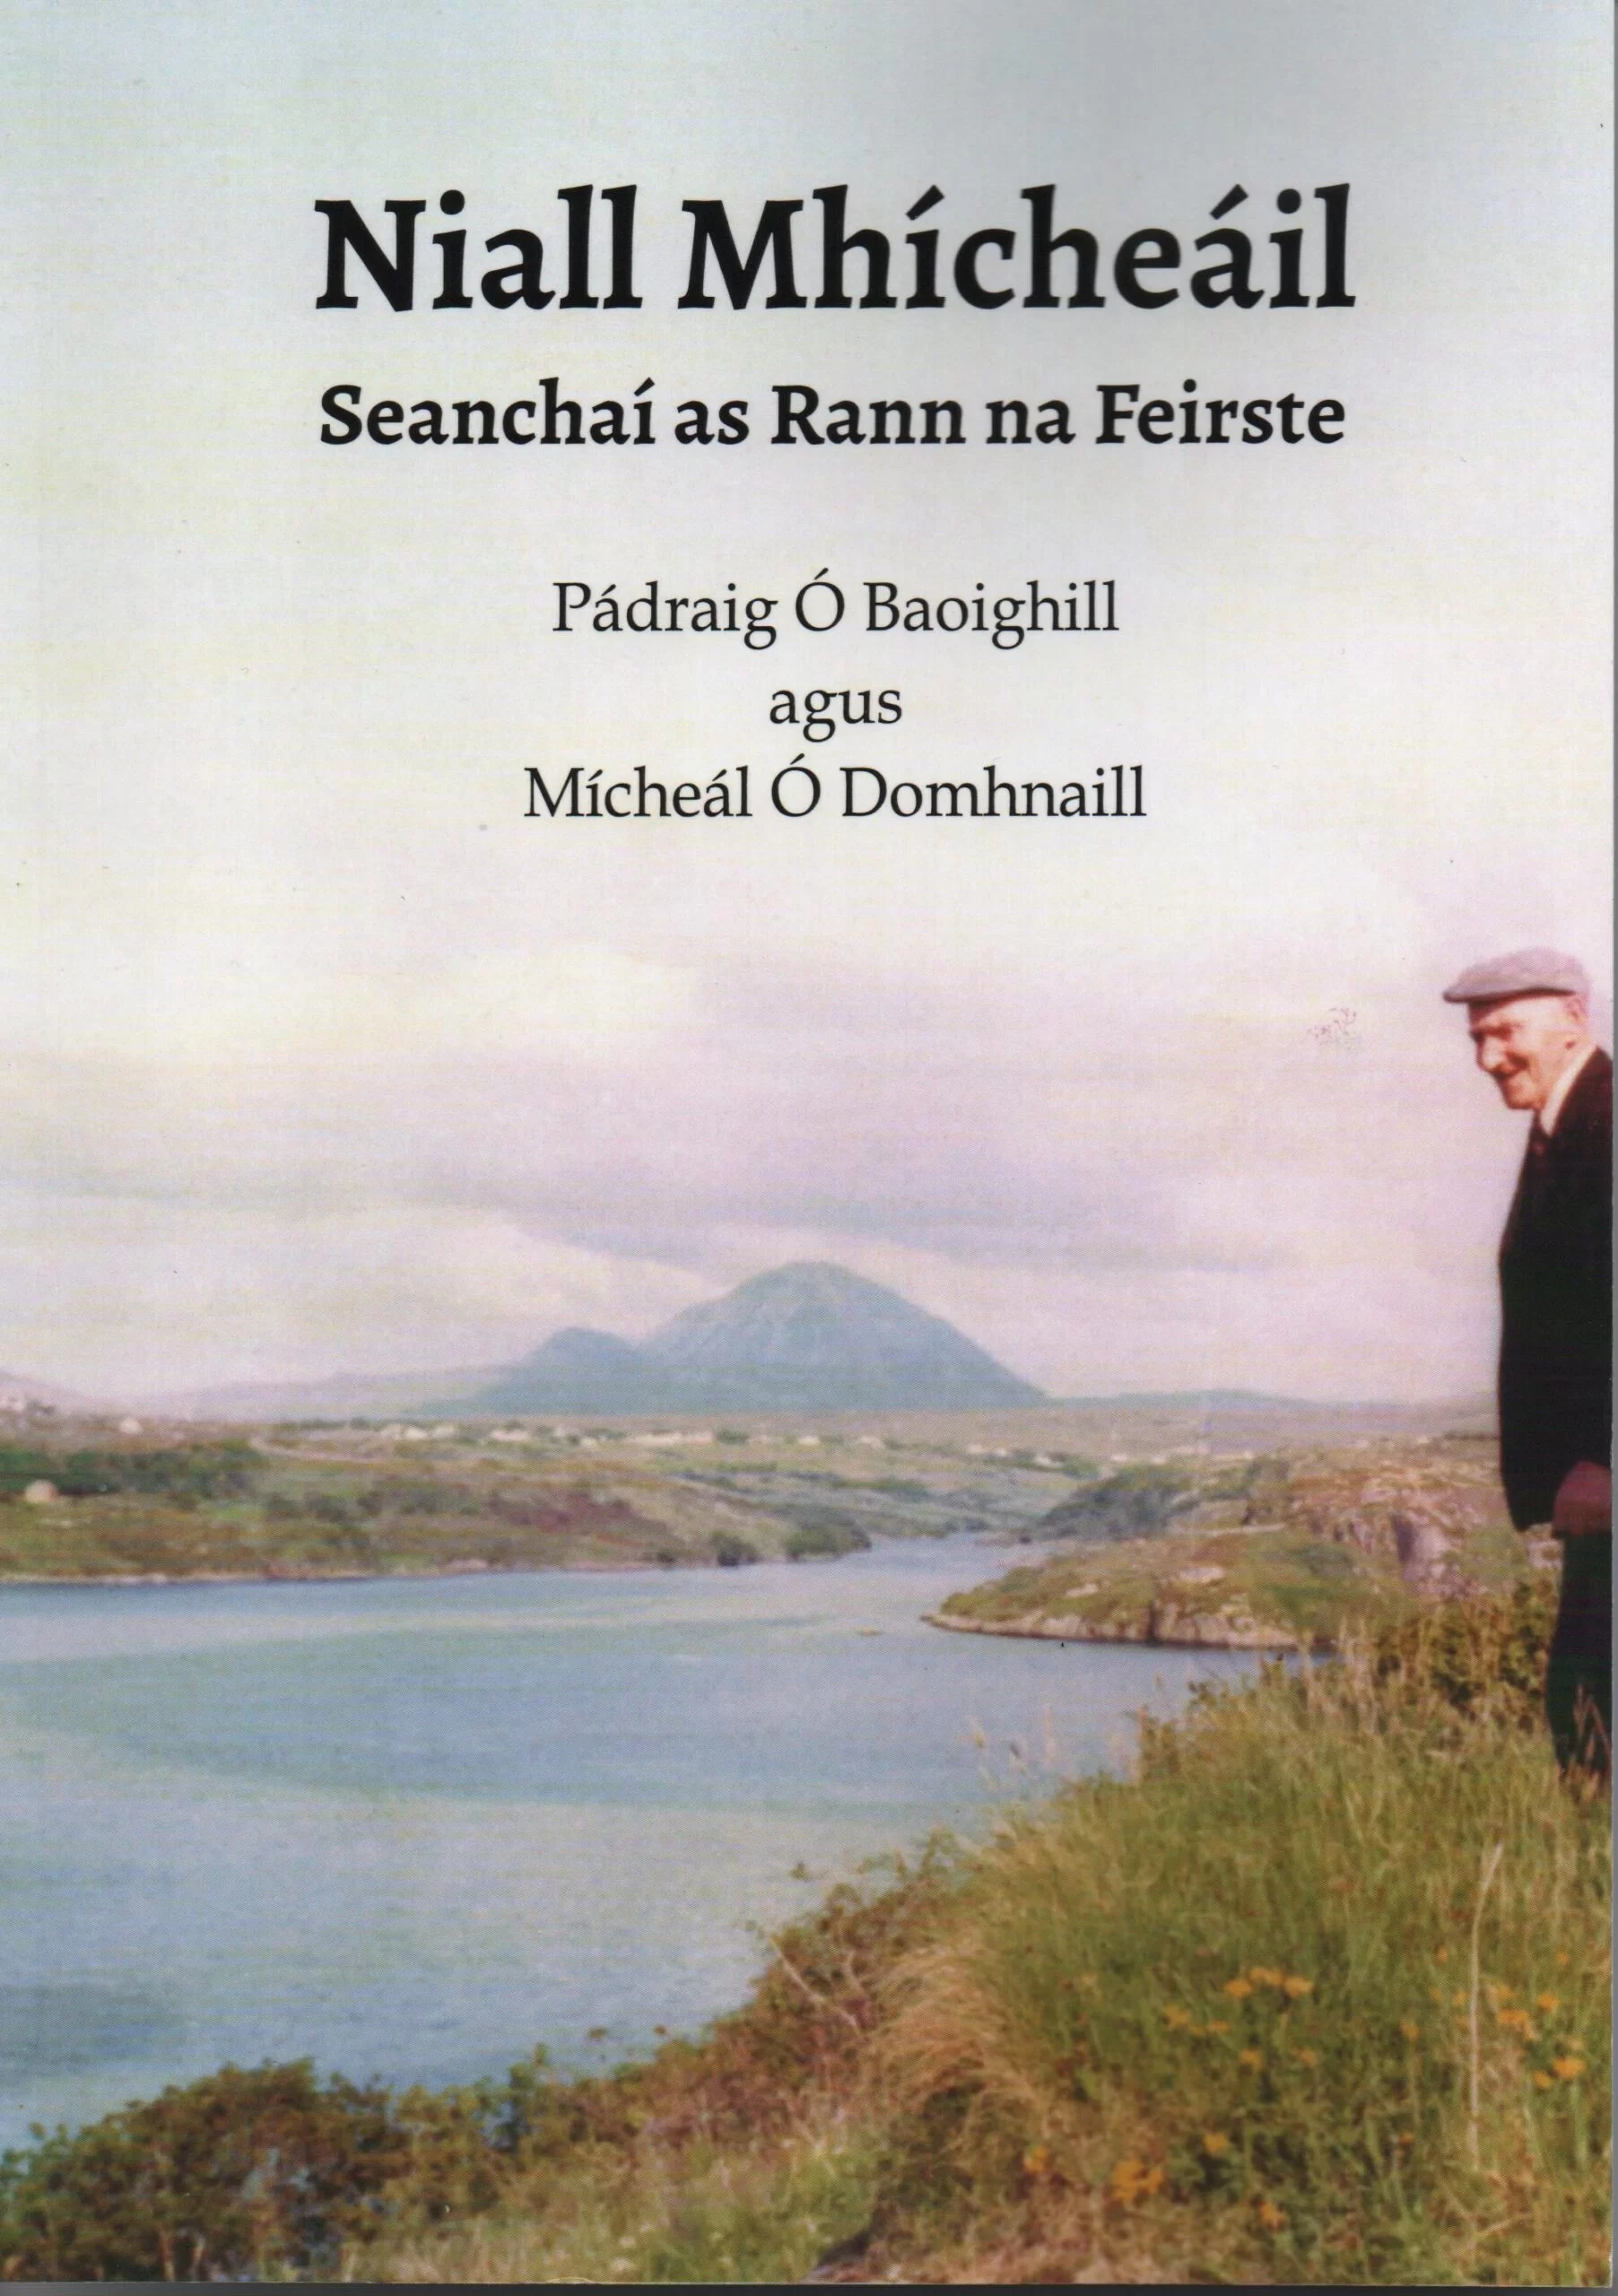 Niall Mhícheáil – Seanchaí as Rann na Feirste by Pádraig Ó Baoighill & Mícheál Ó Domhnaill